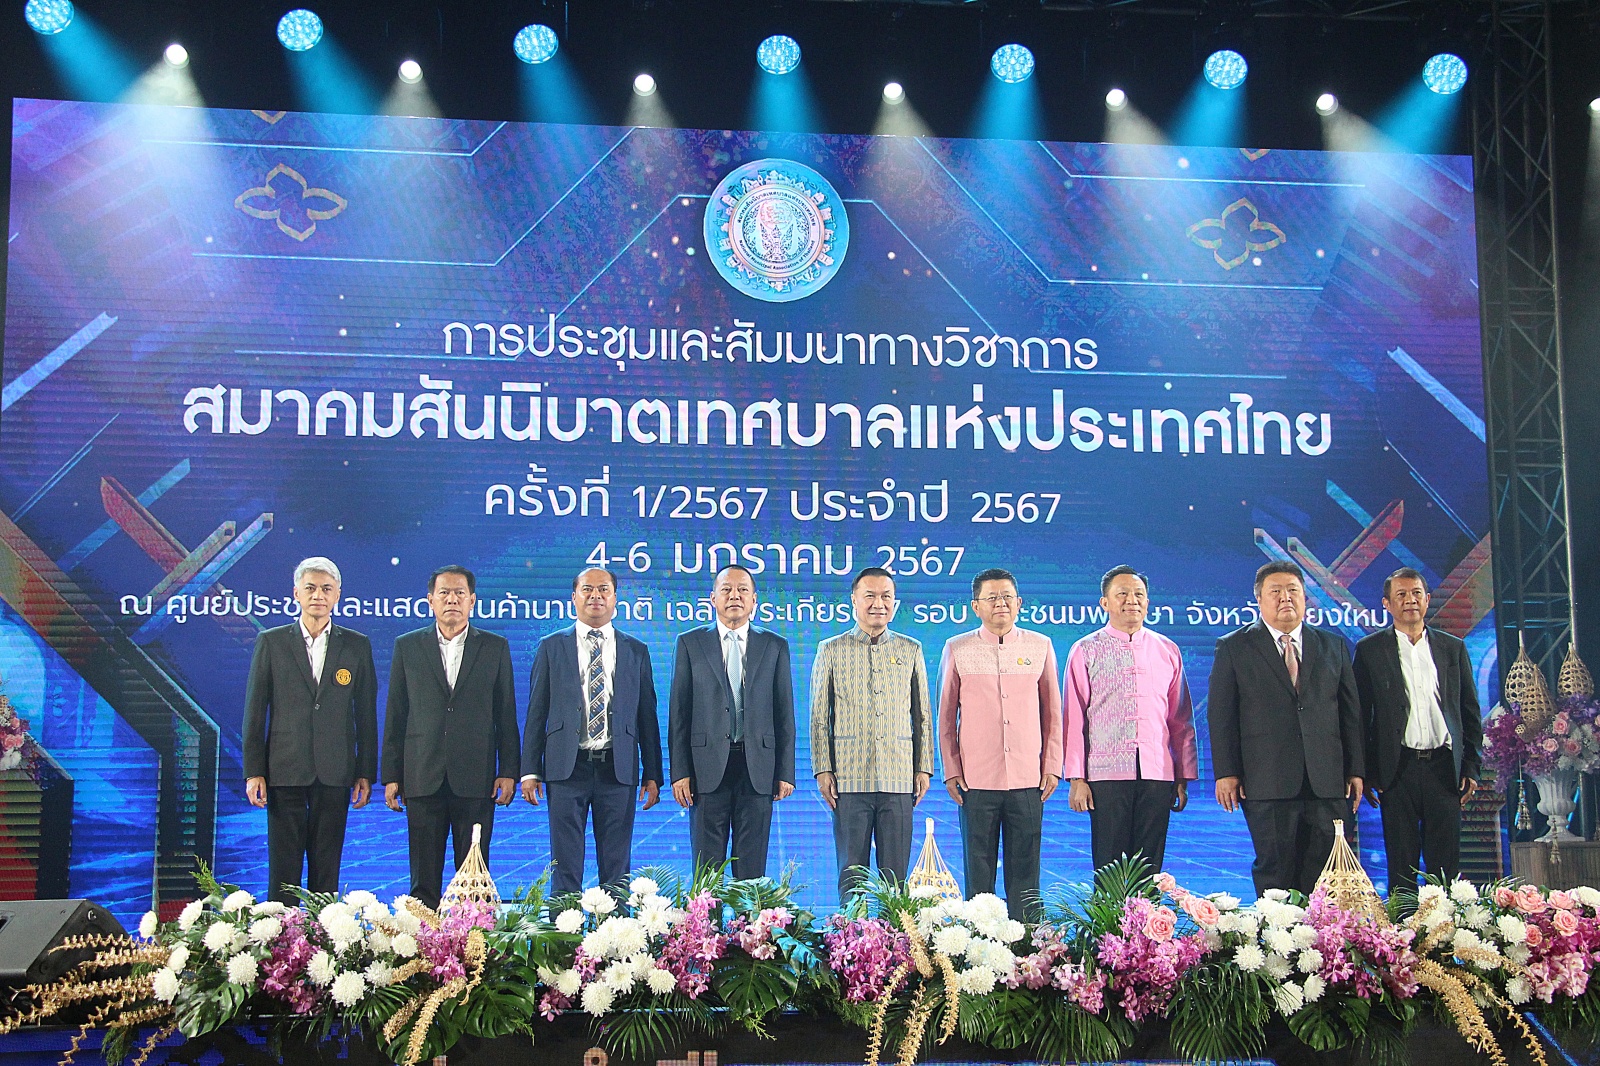 สมาคมสันนิบาตเทศบาลแห่งประเทศไทย จัดสัมมนาวิชาการ ครั้งที่ 1 ที่ เชียงใหม่